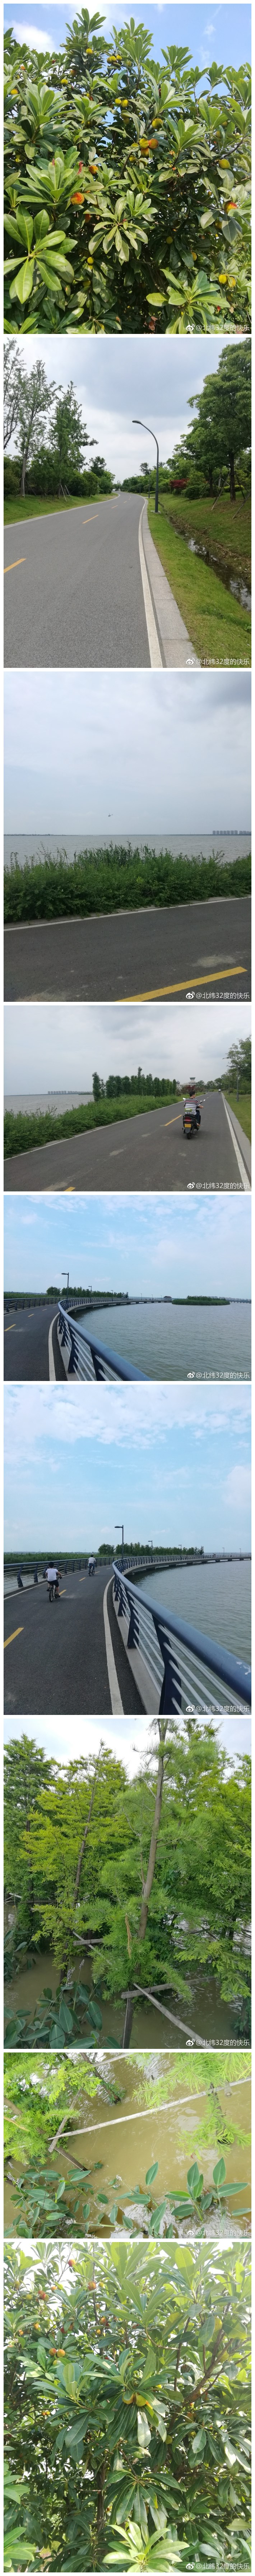 阳澄湖环湖自行车道